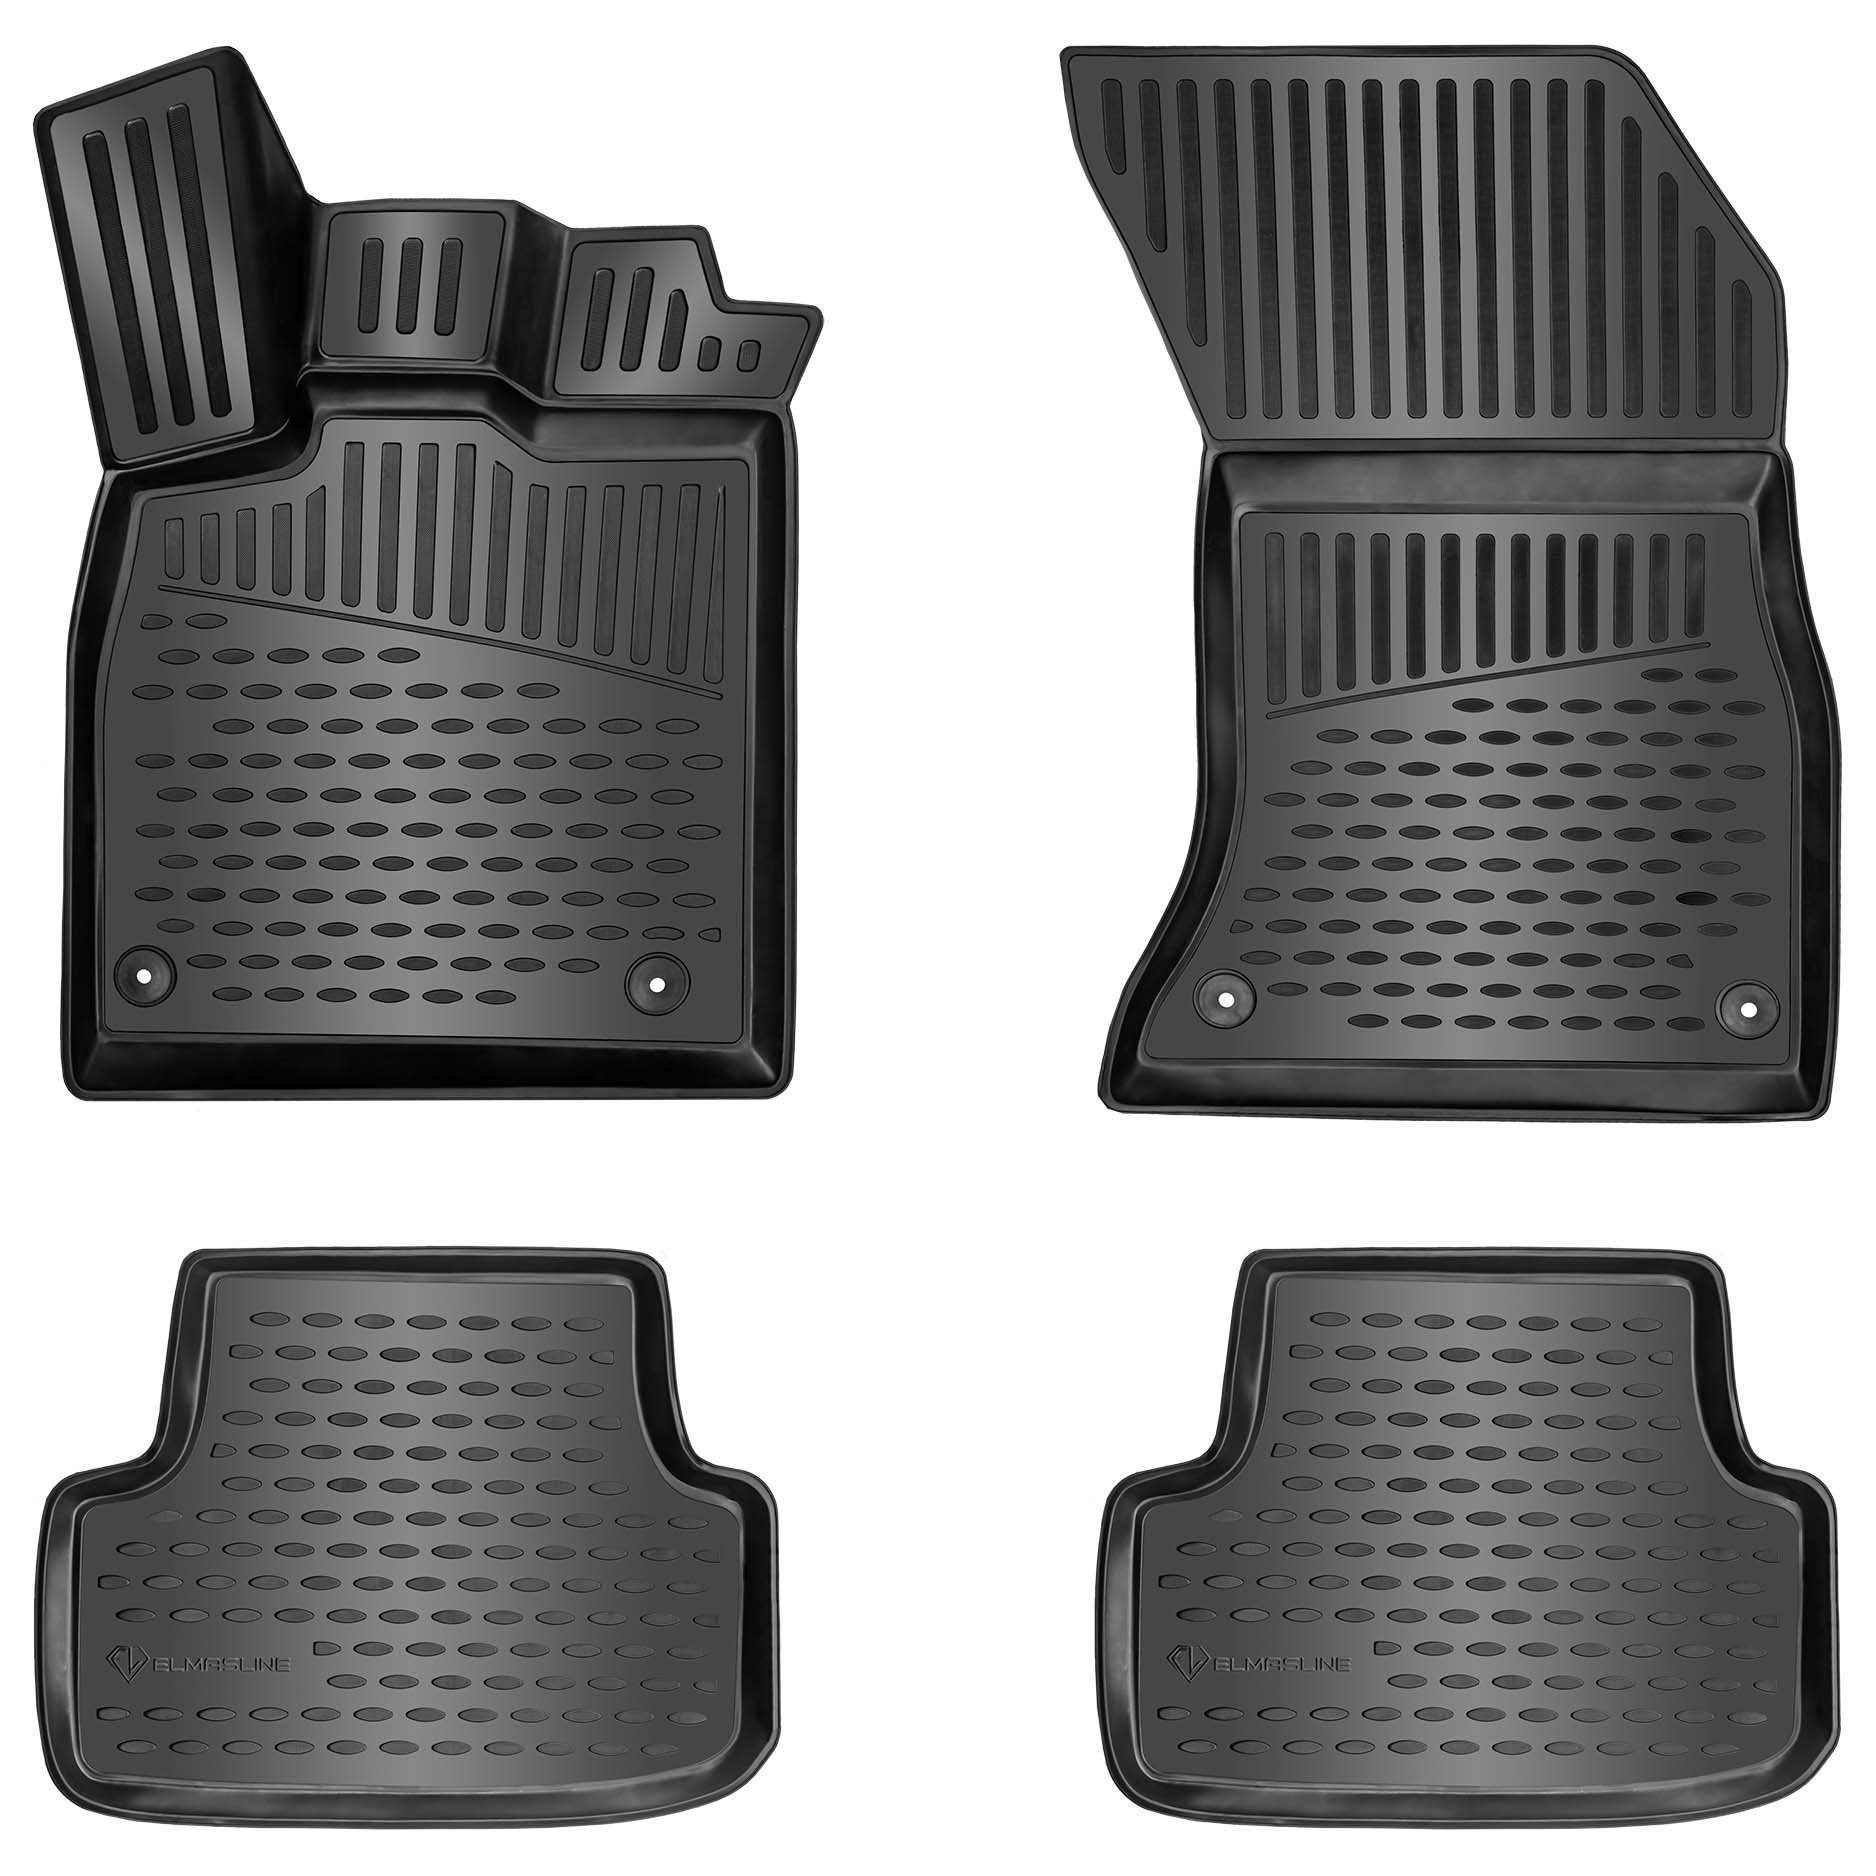 ELMASLINE Auto-Fußmatten Gummi (4 St), für VW JETTA 4 (2010-2018) IV. Generation - 3D Gummimatten mit extra hohem Rand für mehr Schutz - Passend für Baujahre:, 2010 - 2018